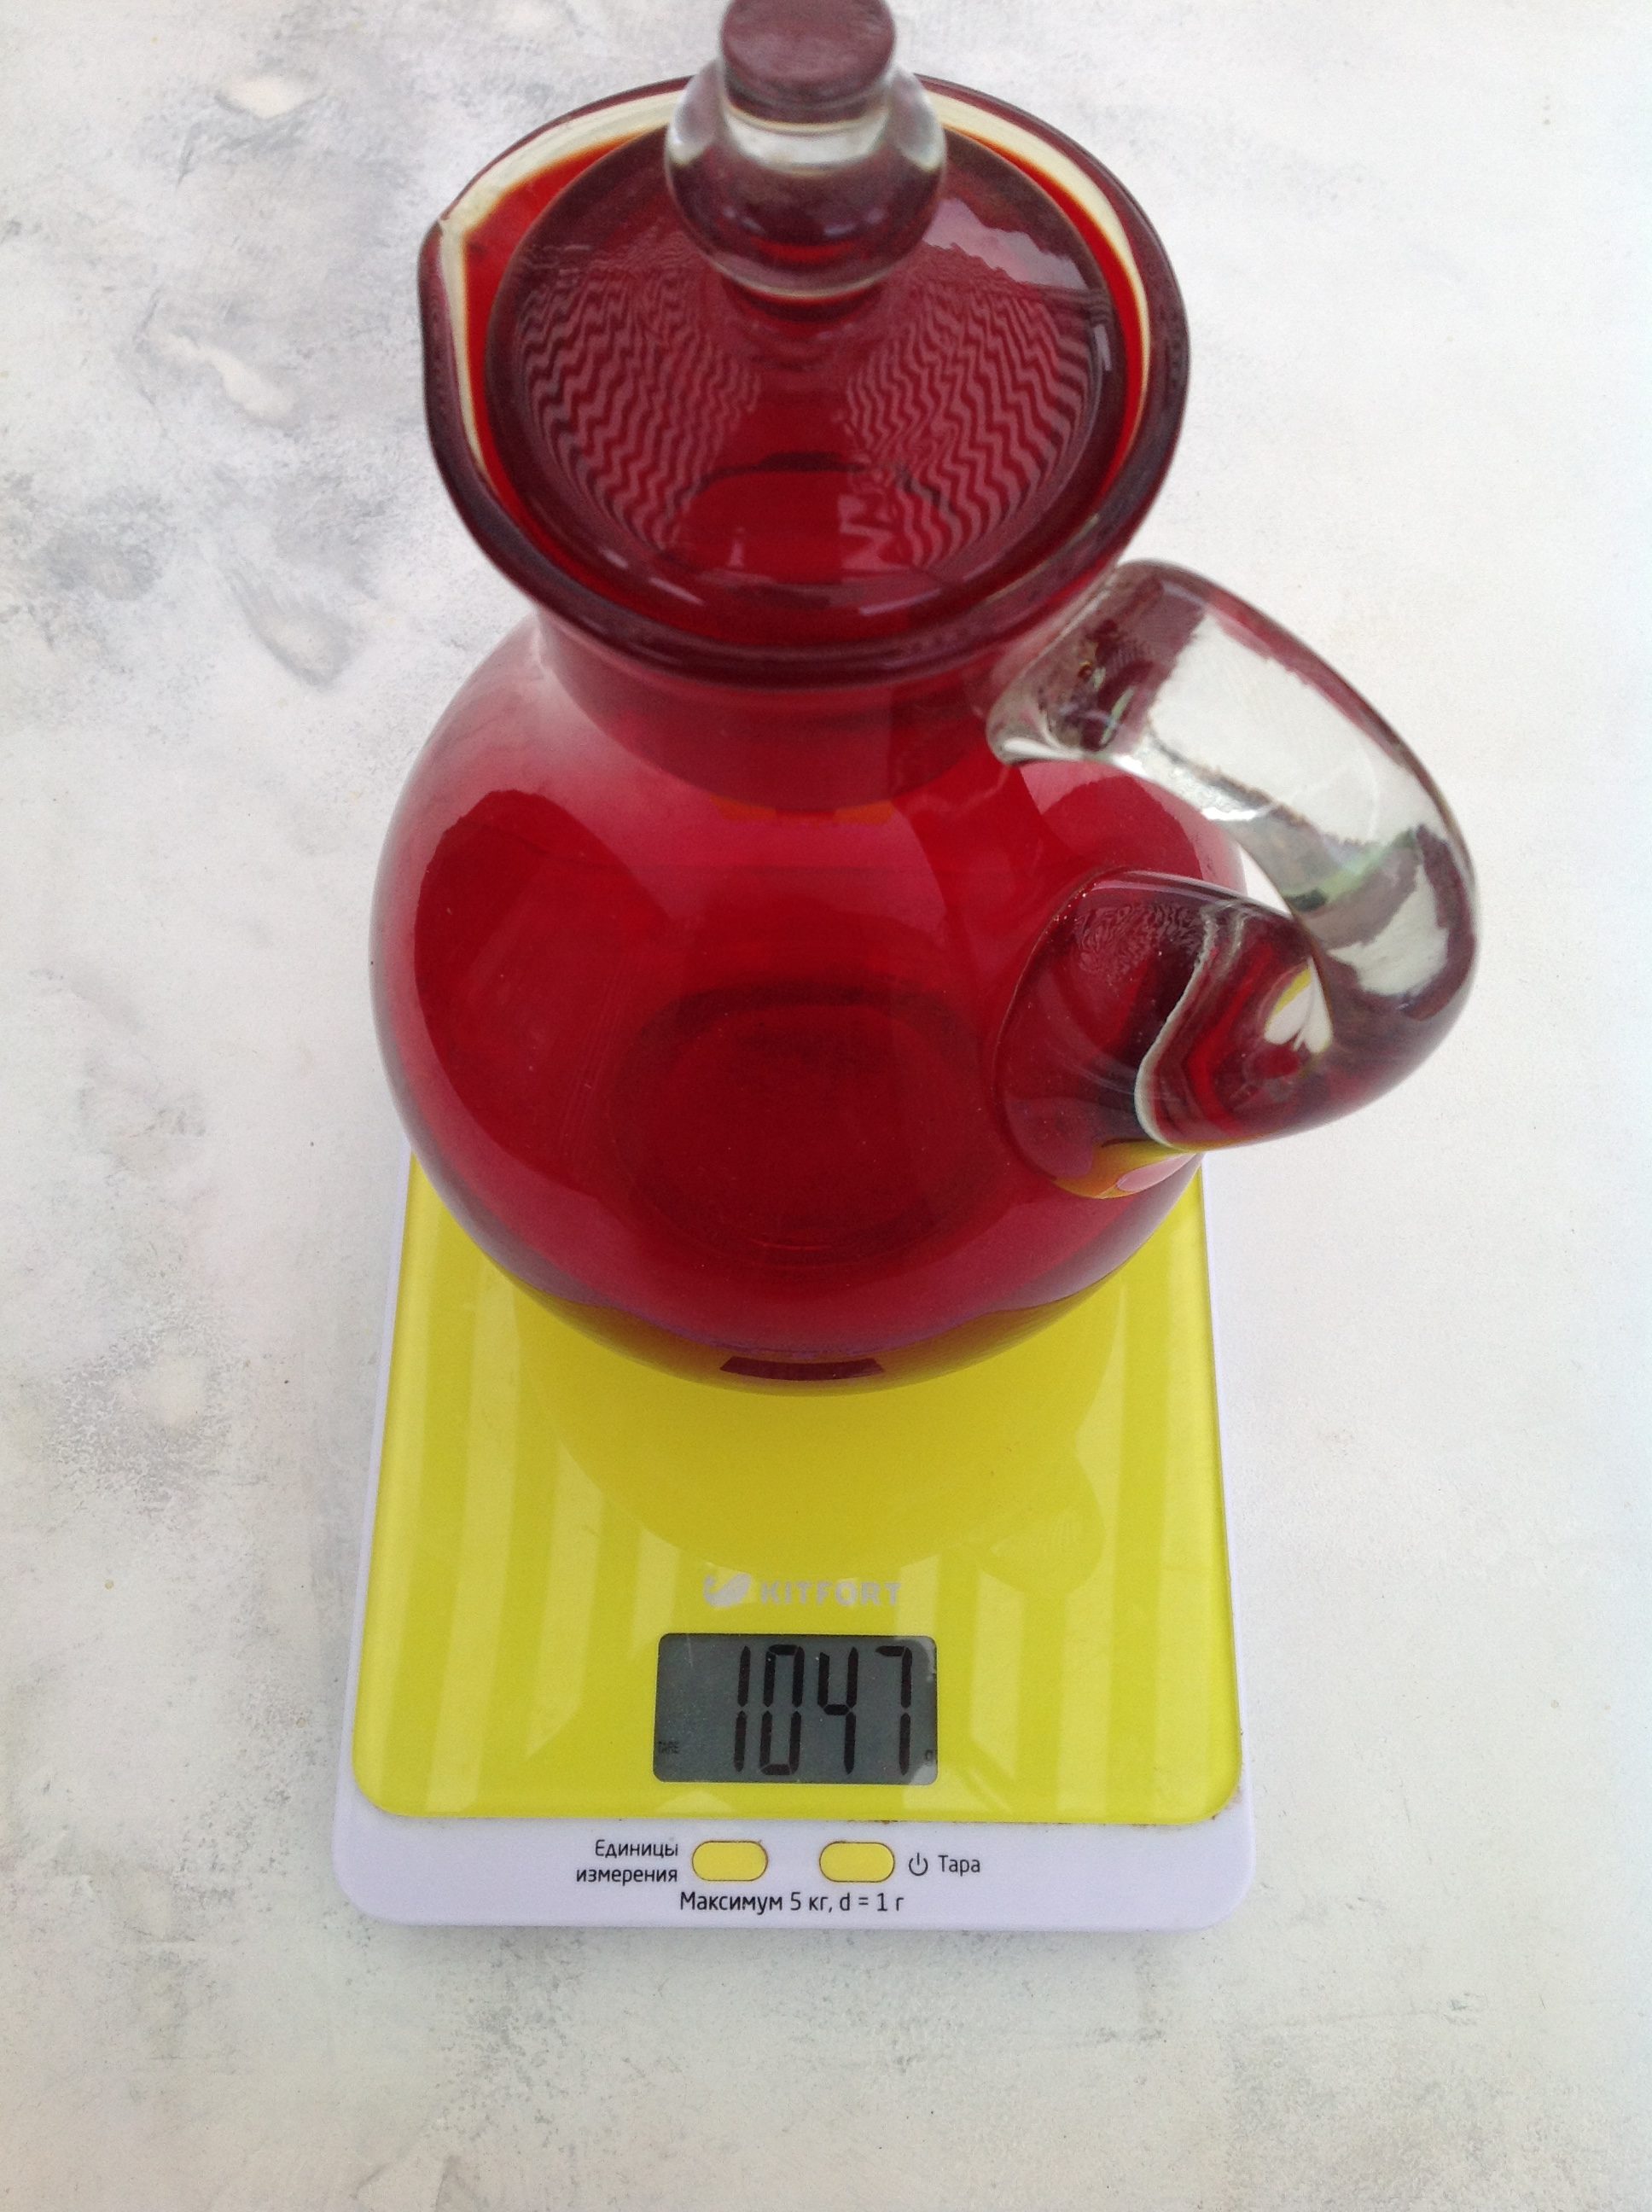 1 litro talpos stiklinės dekanterio svoris